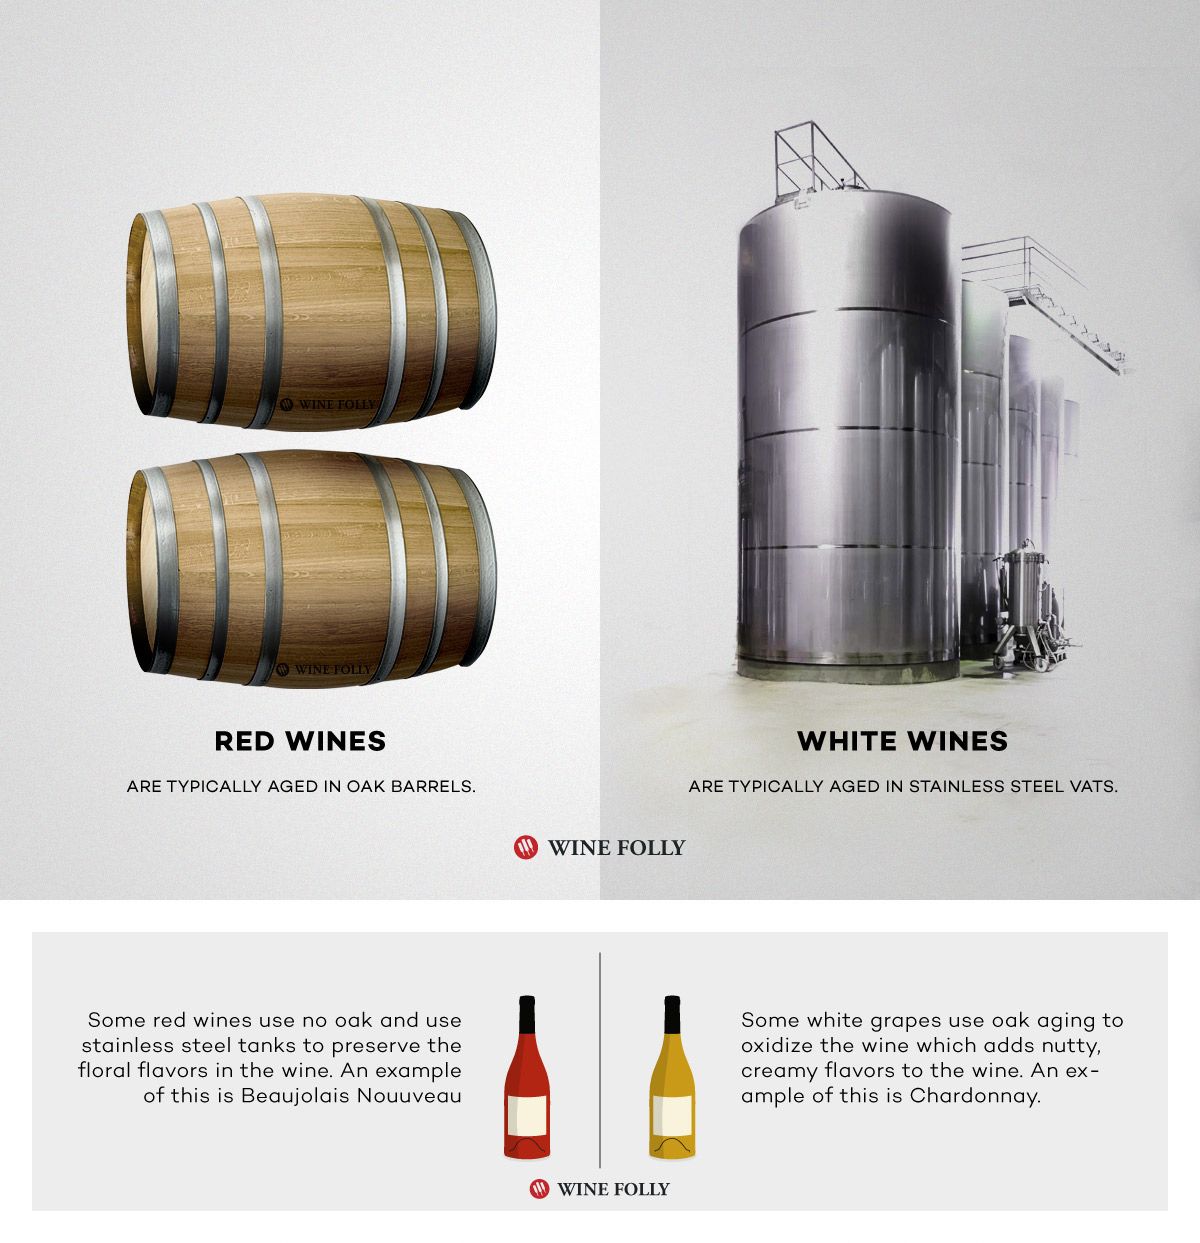 El vino tinto frente al vino blanco se envejece de manera diferente en acero inoxidable frente al envejecimiento en barrica de roble por Wine Folly